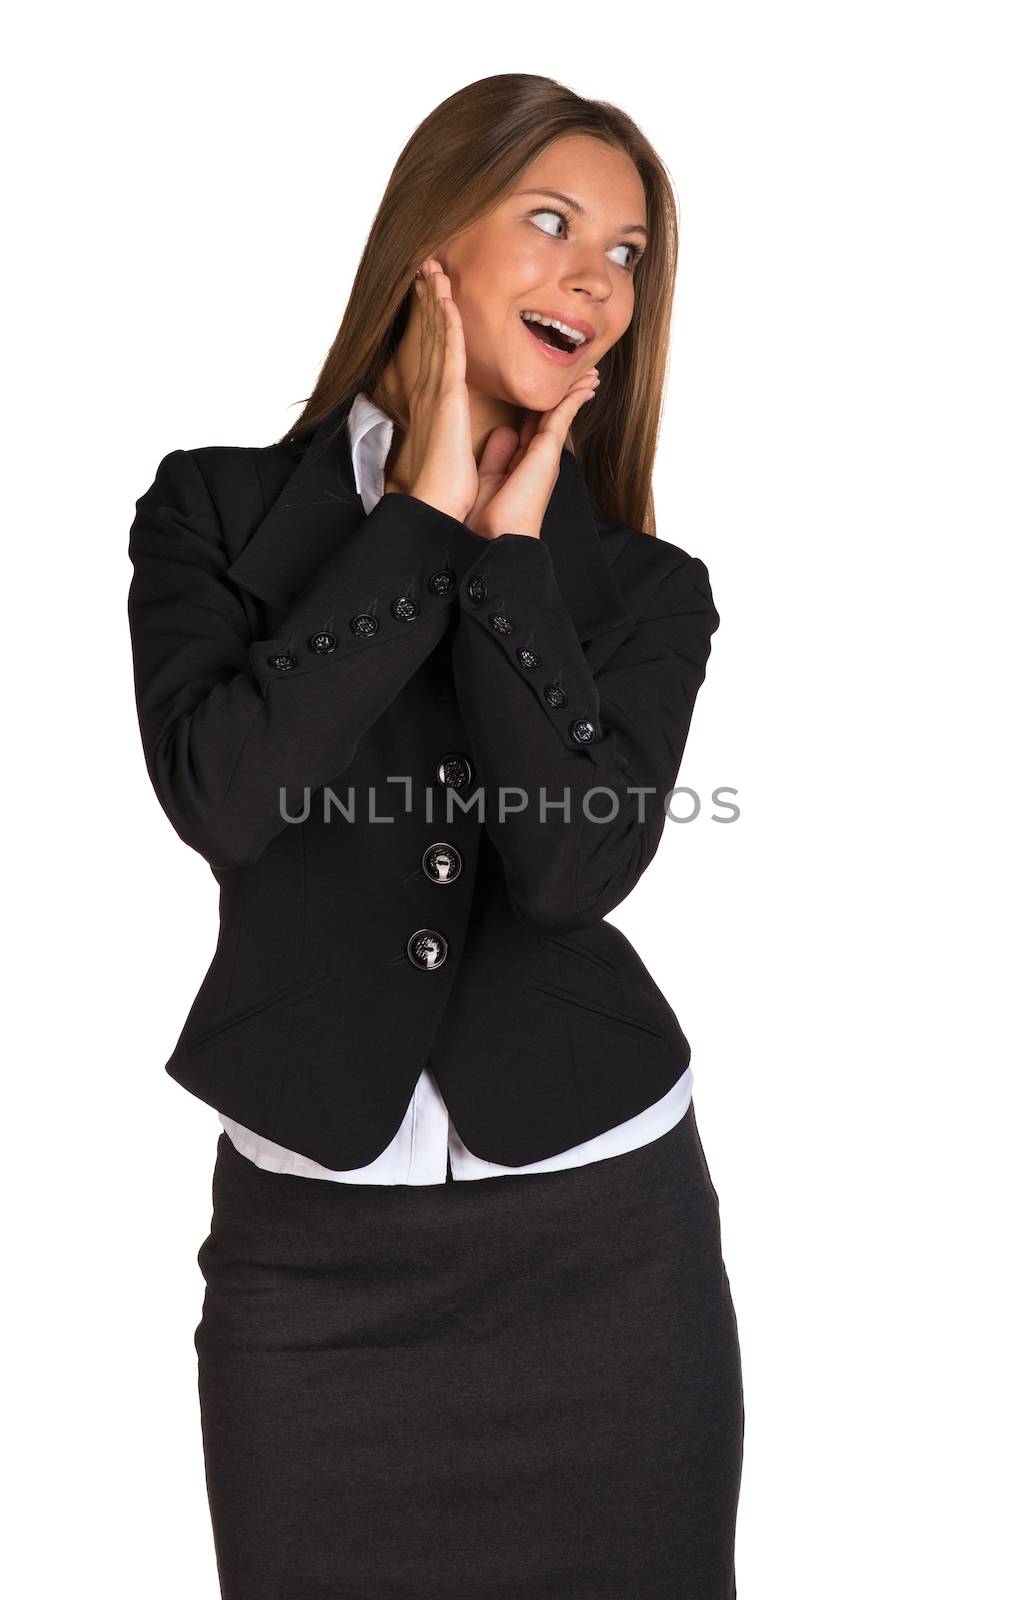 Joyful businesswoman. Isolated on the white background